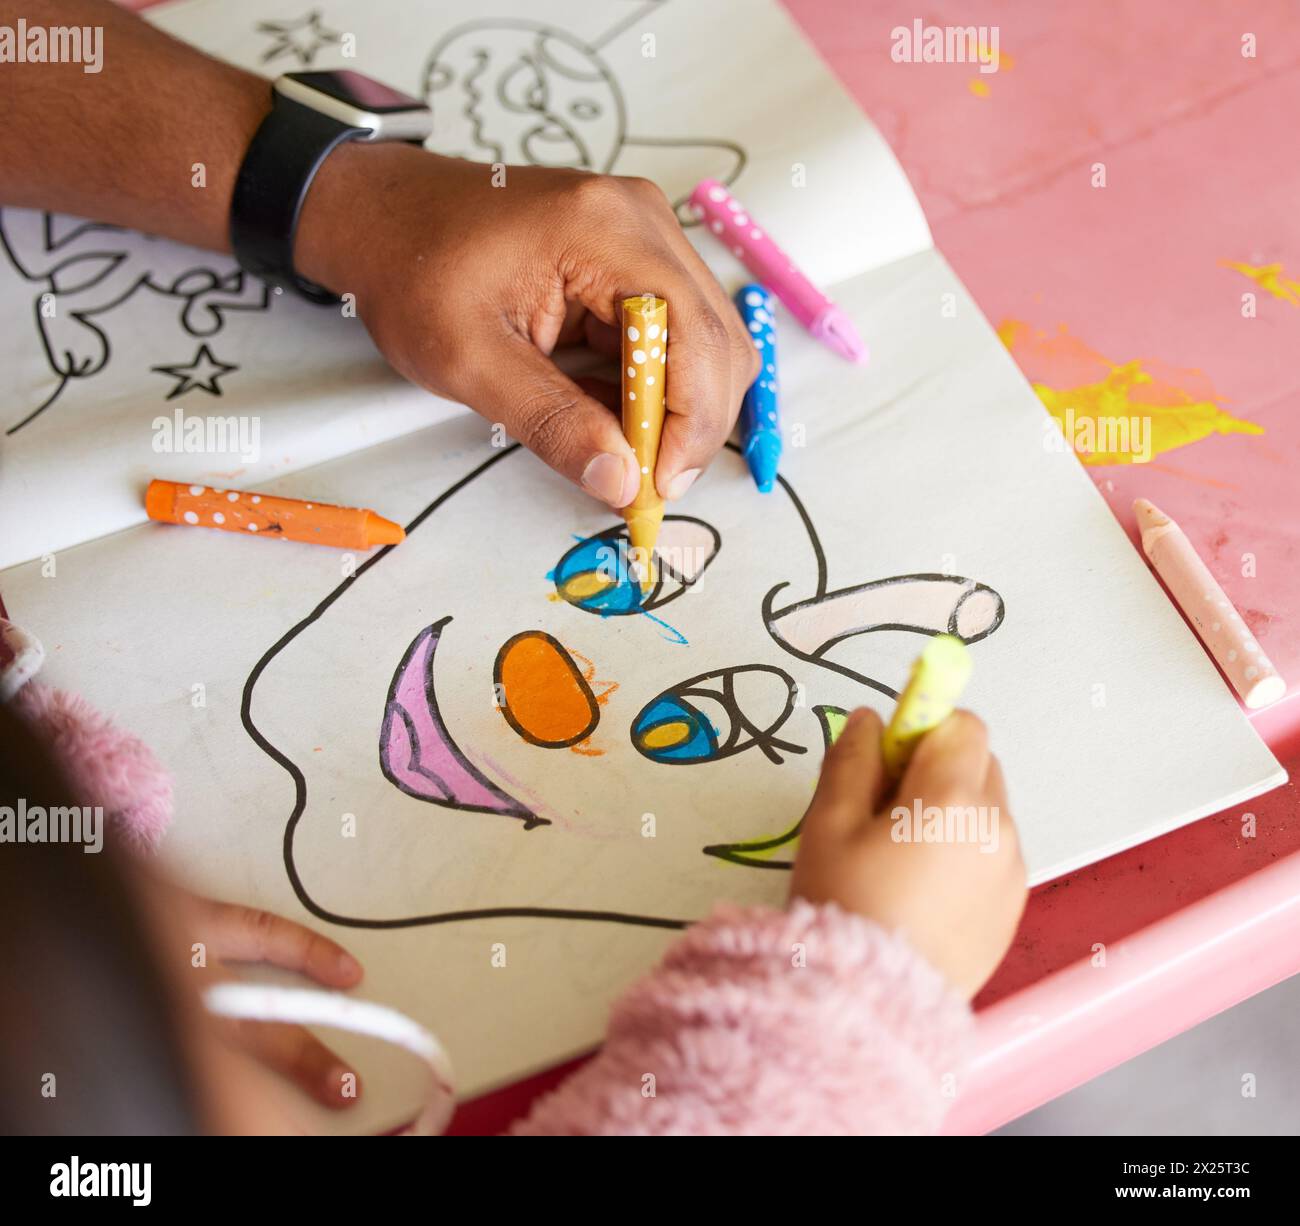 Manuale, libro dei bambini e dei colori con l'aiuto della mamma, che unisce creatività e apprendimento. Casa, disegno di carta e famiglia con pastelli, giovani e.. Foto Stock